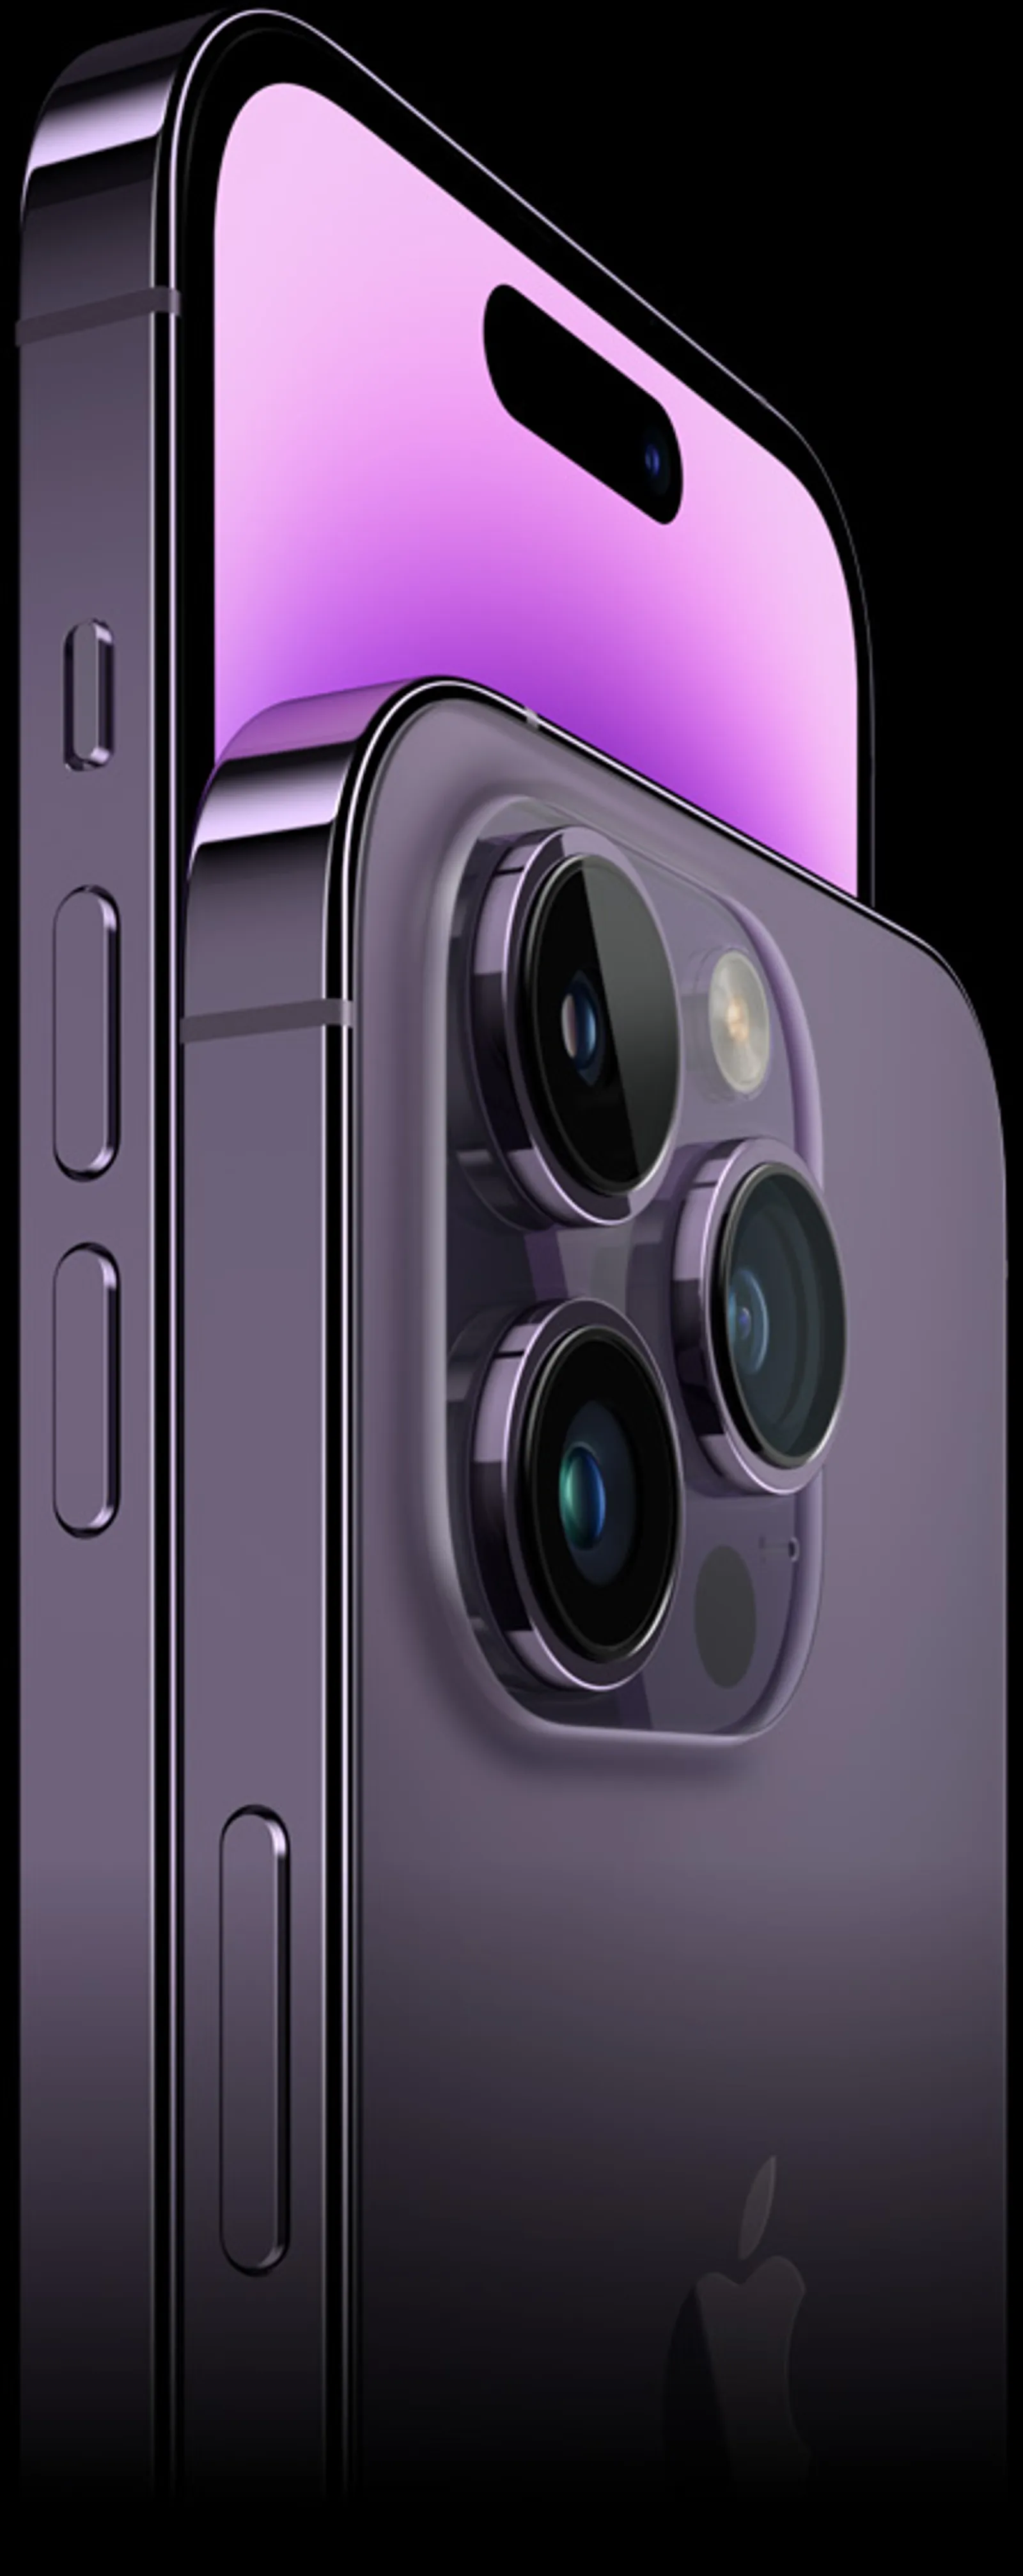 Spesifikasi iPhone 14: Fitur Baru, Kamera, Harga, Desain, dan Baterai